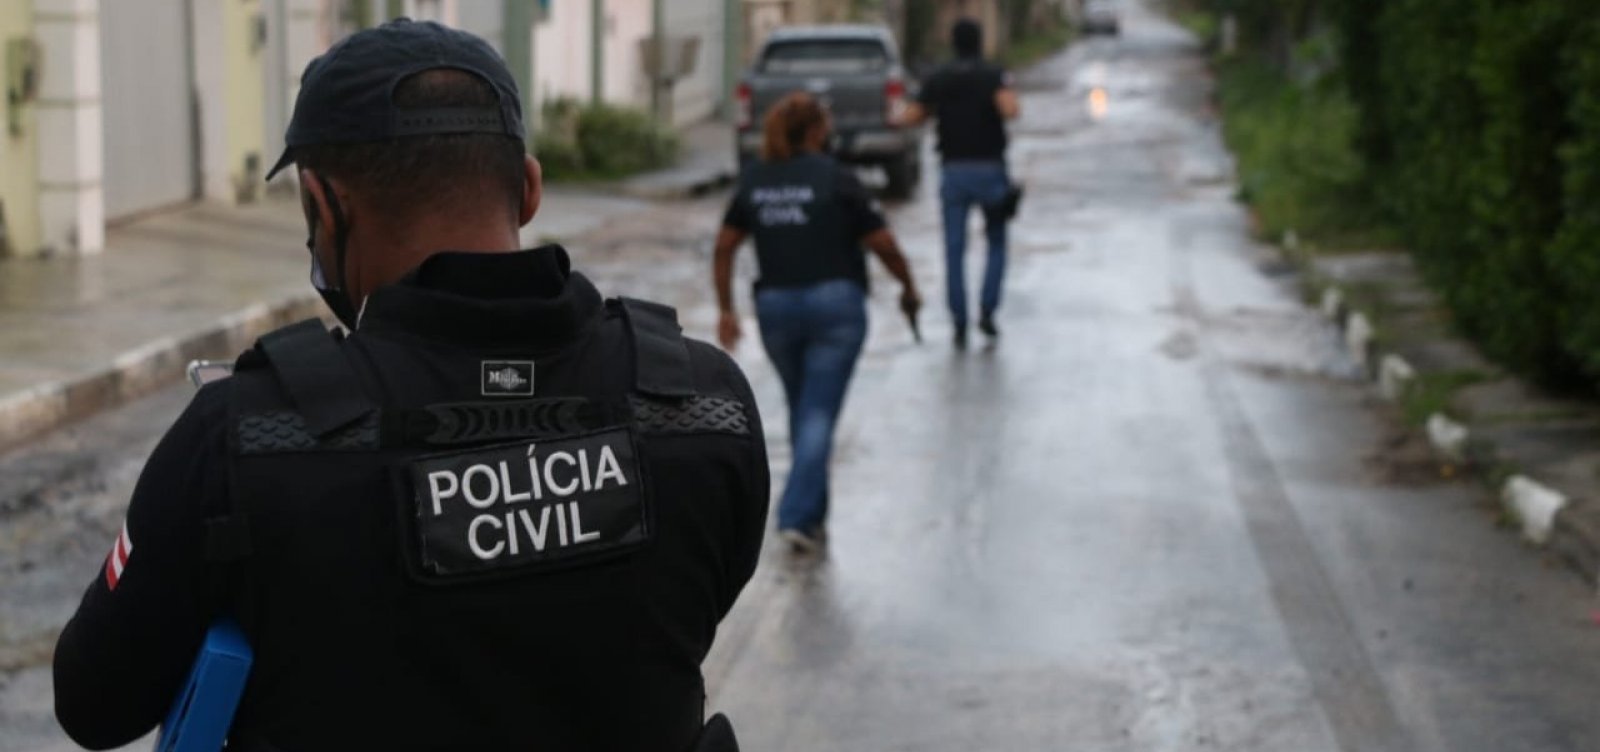 Após recomendação do MP-BA, provas de concurso para delegado de Polícia Civil da Bahia têm nova data 